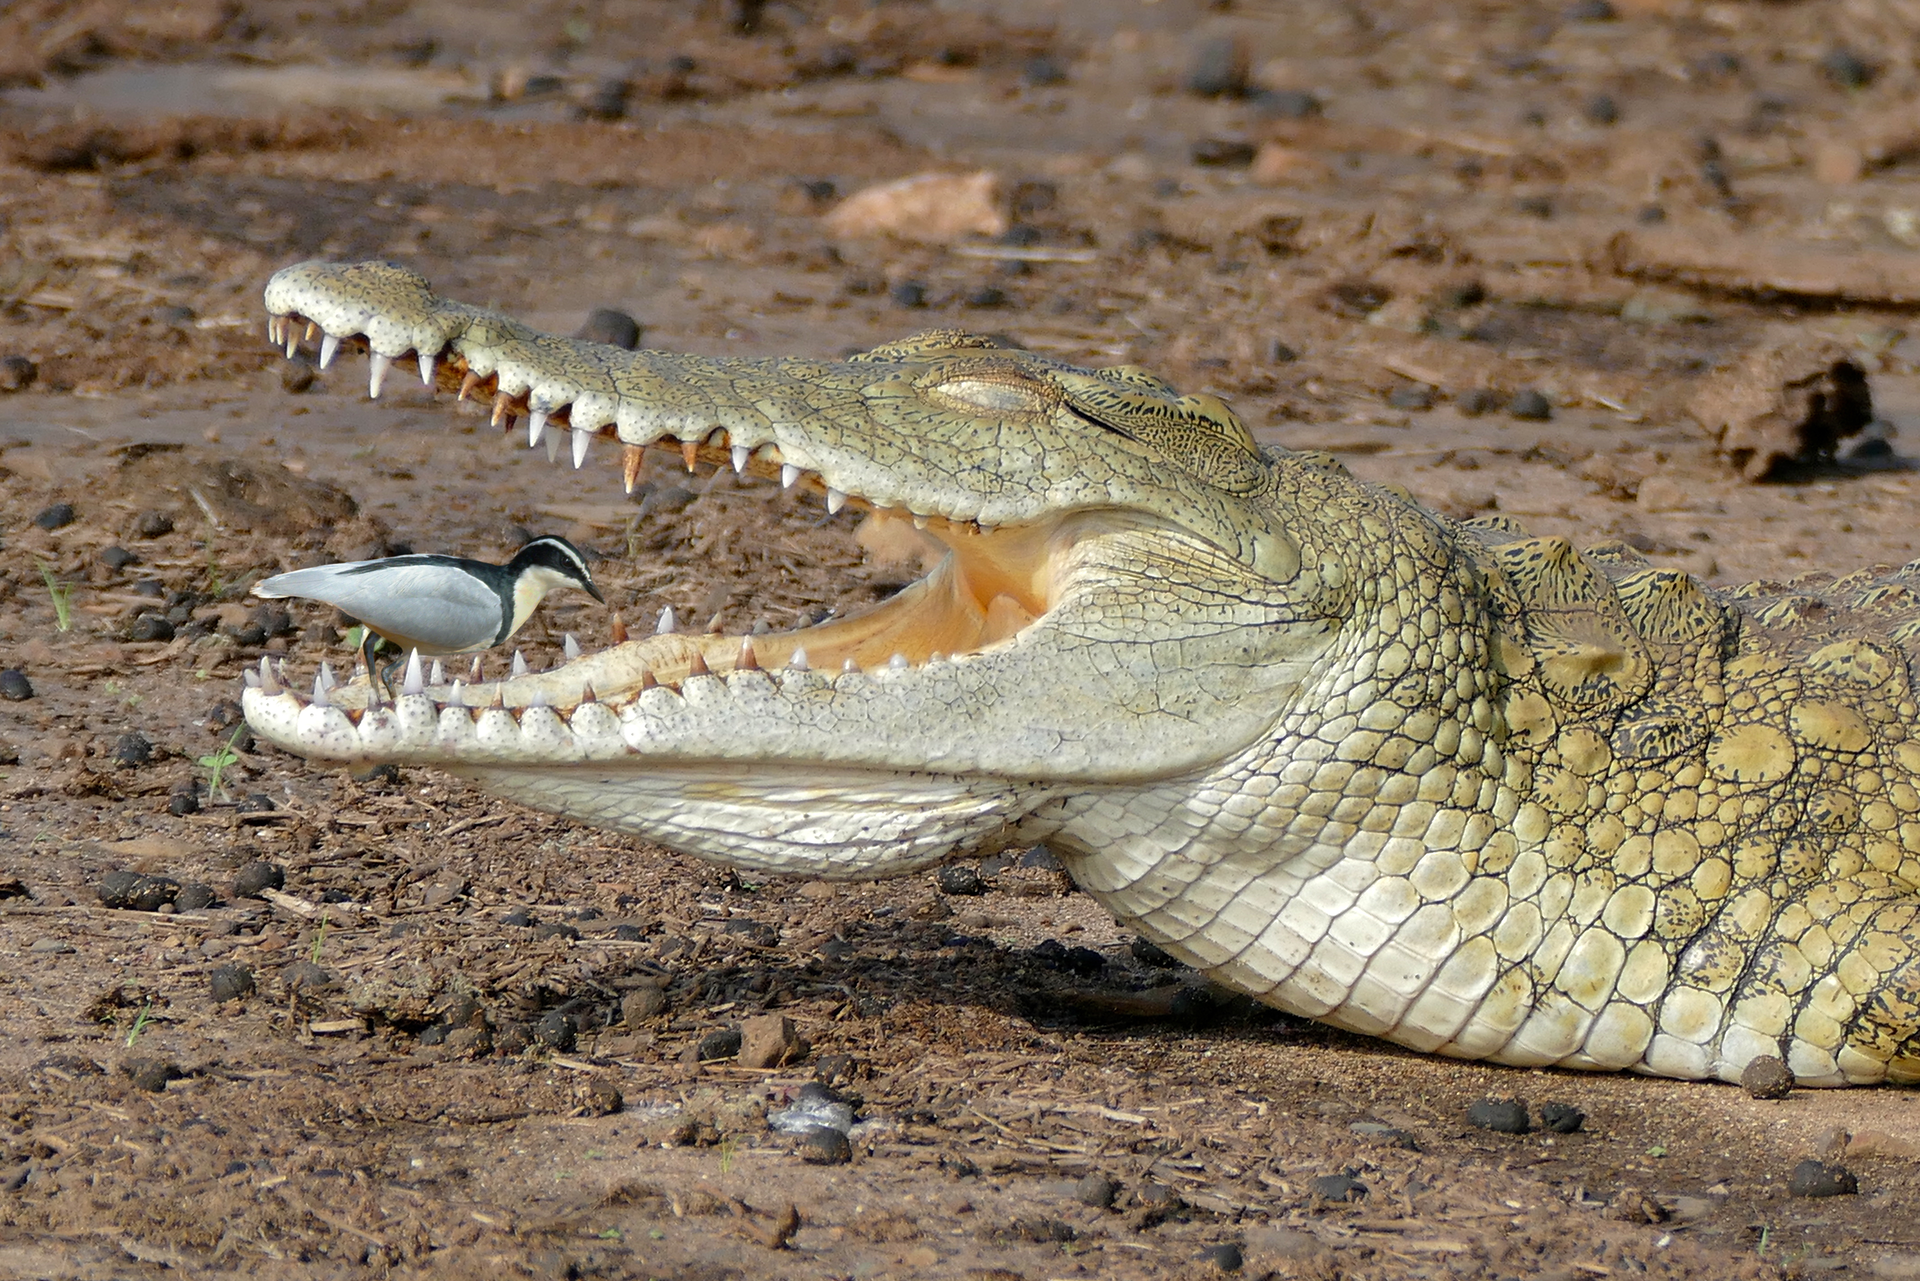 Fotografia prezdstawia krokodyla zwróconego bokiem. Krokodyl ma otwartą paszczę, W paszczy stoi mały ptak czyściciel.